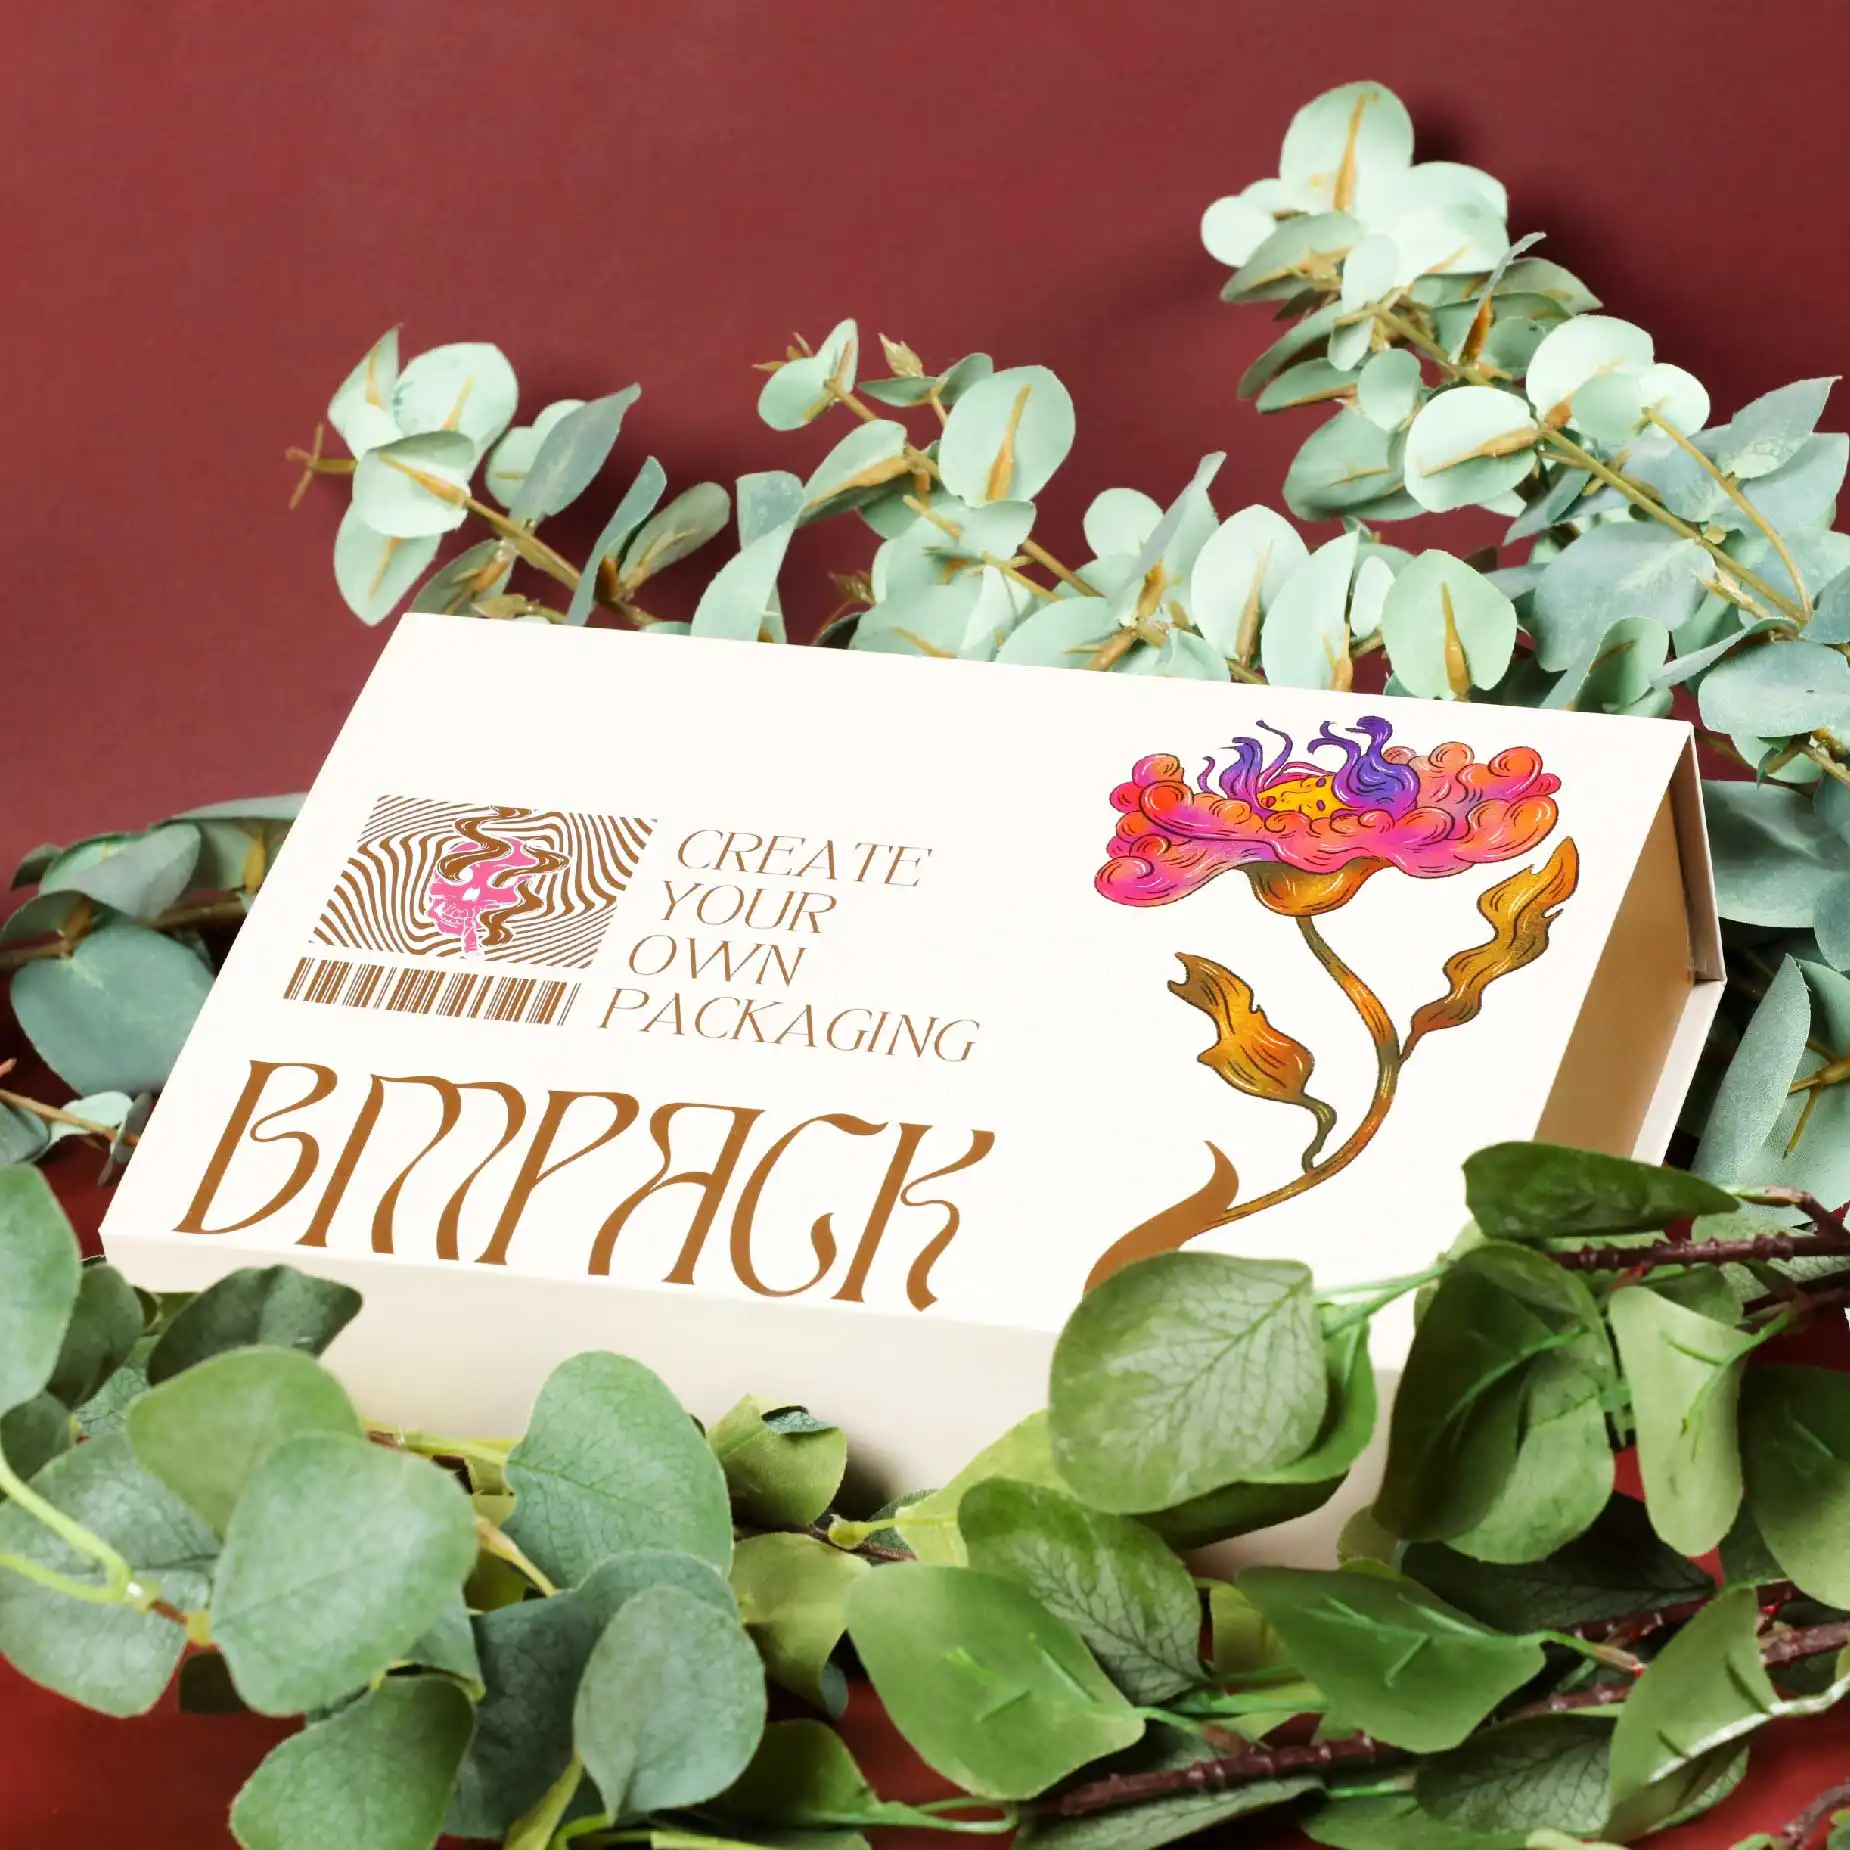 在深紅色的背景下，在樹枝上擺放了一個米白色的磁石書型硬盒，盒面印有"BM Pack"和"Create your own Packaging"字眼加上淺紅色的花朵圖案作點綴。